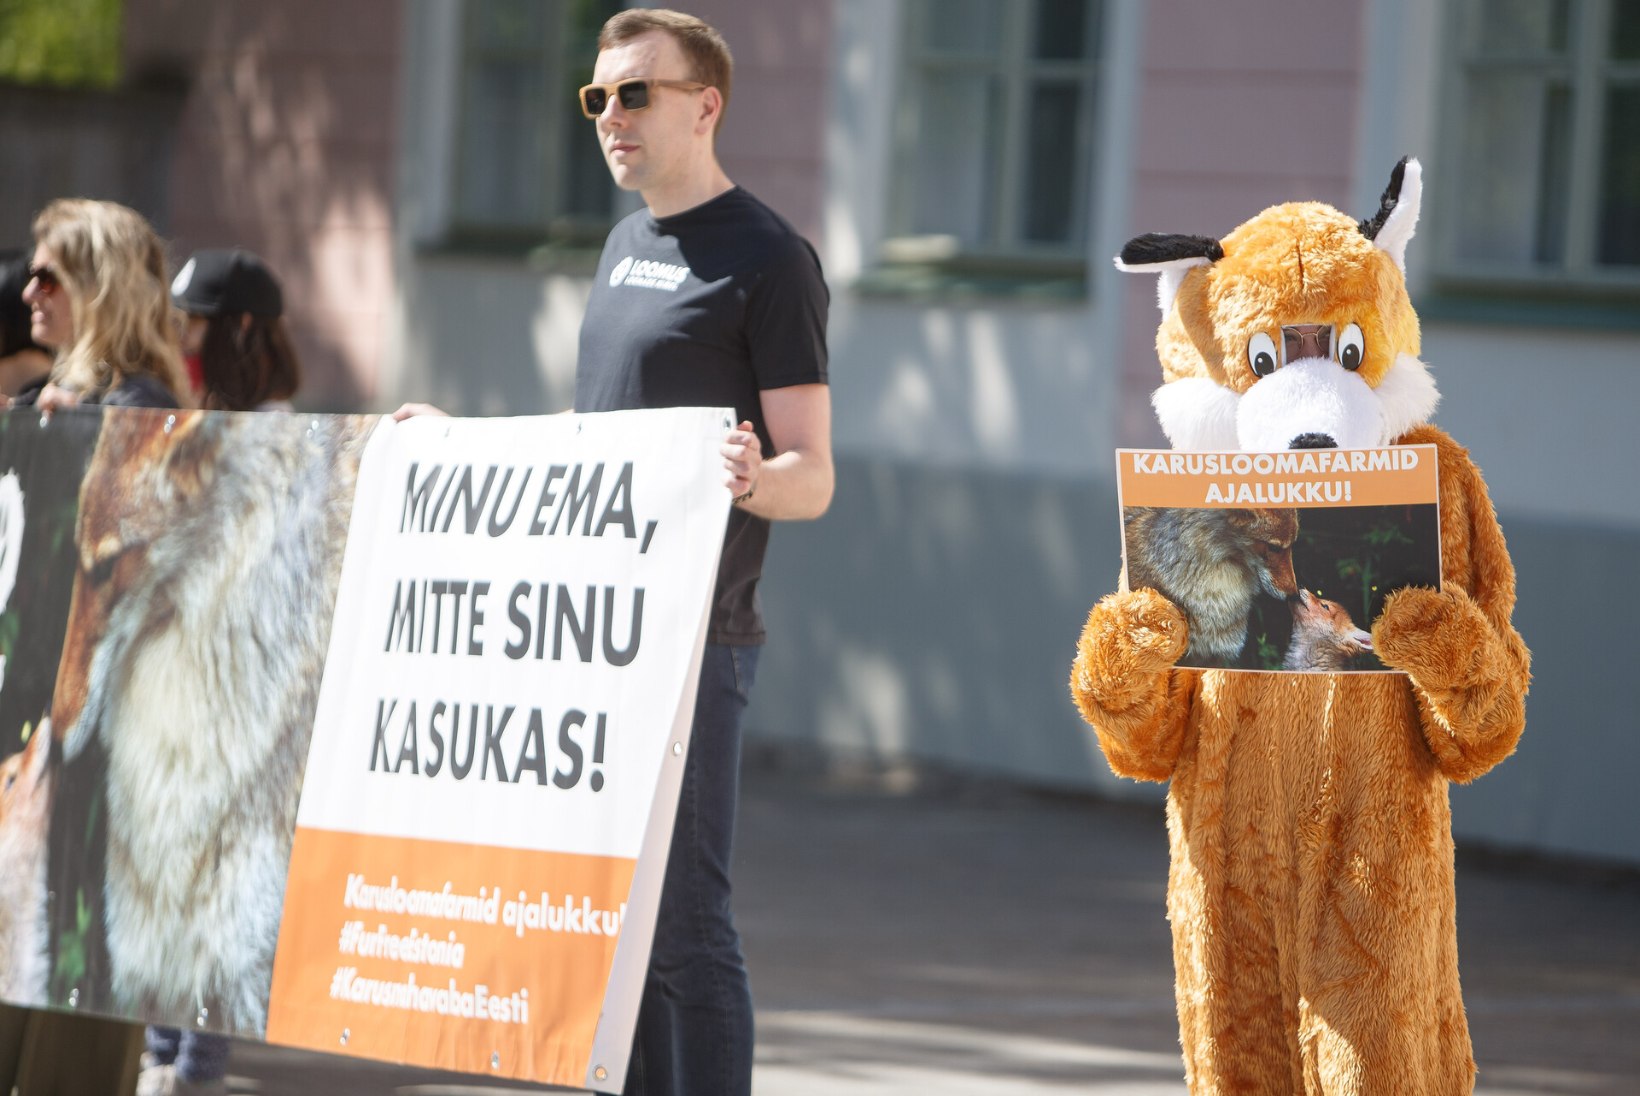 GALERII |  Loomakaitsjad kogunesid karusloomafarmide keelustamise eelnõu toetuseks